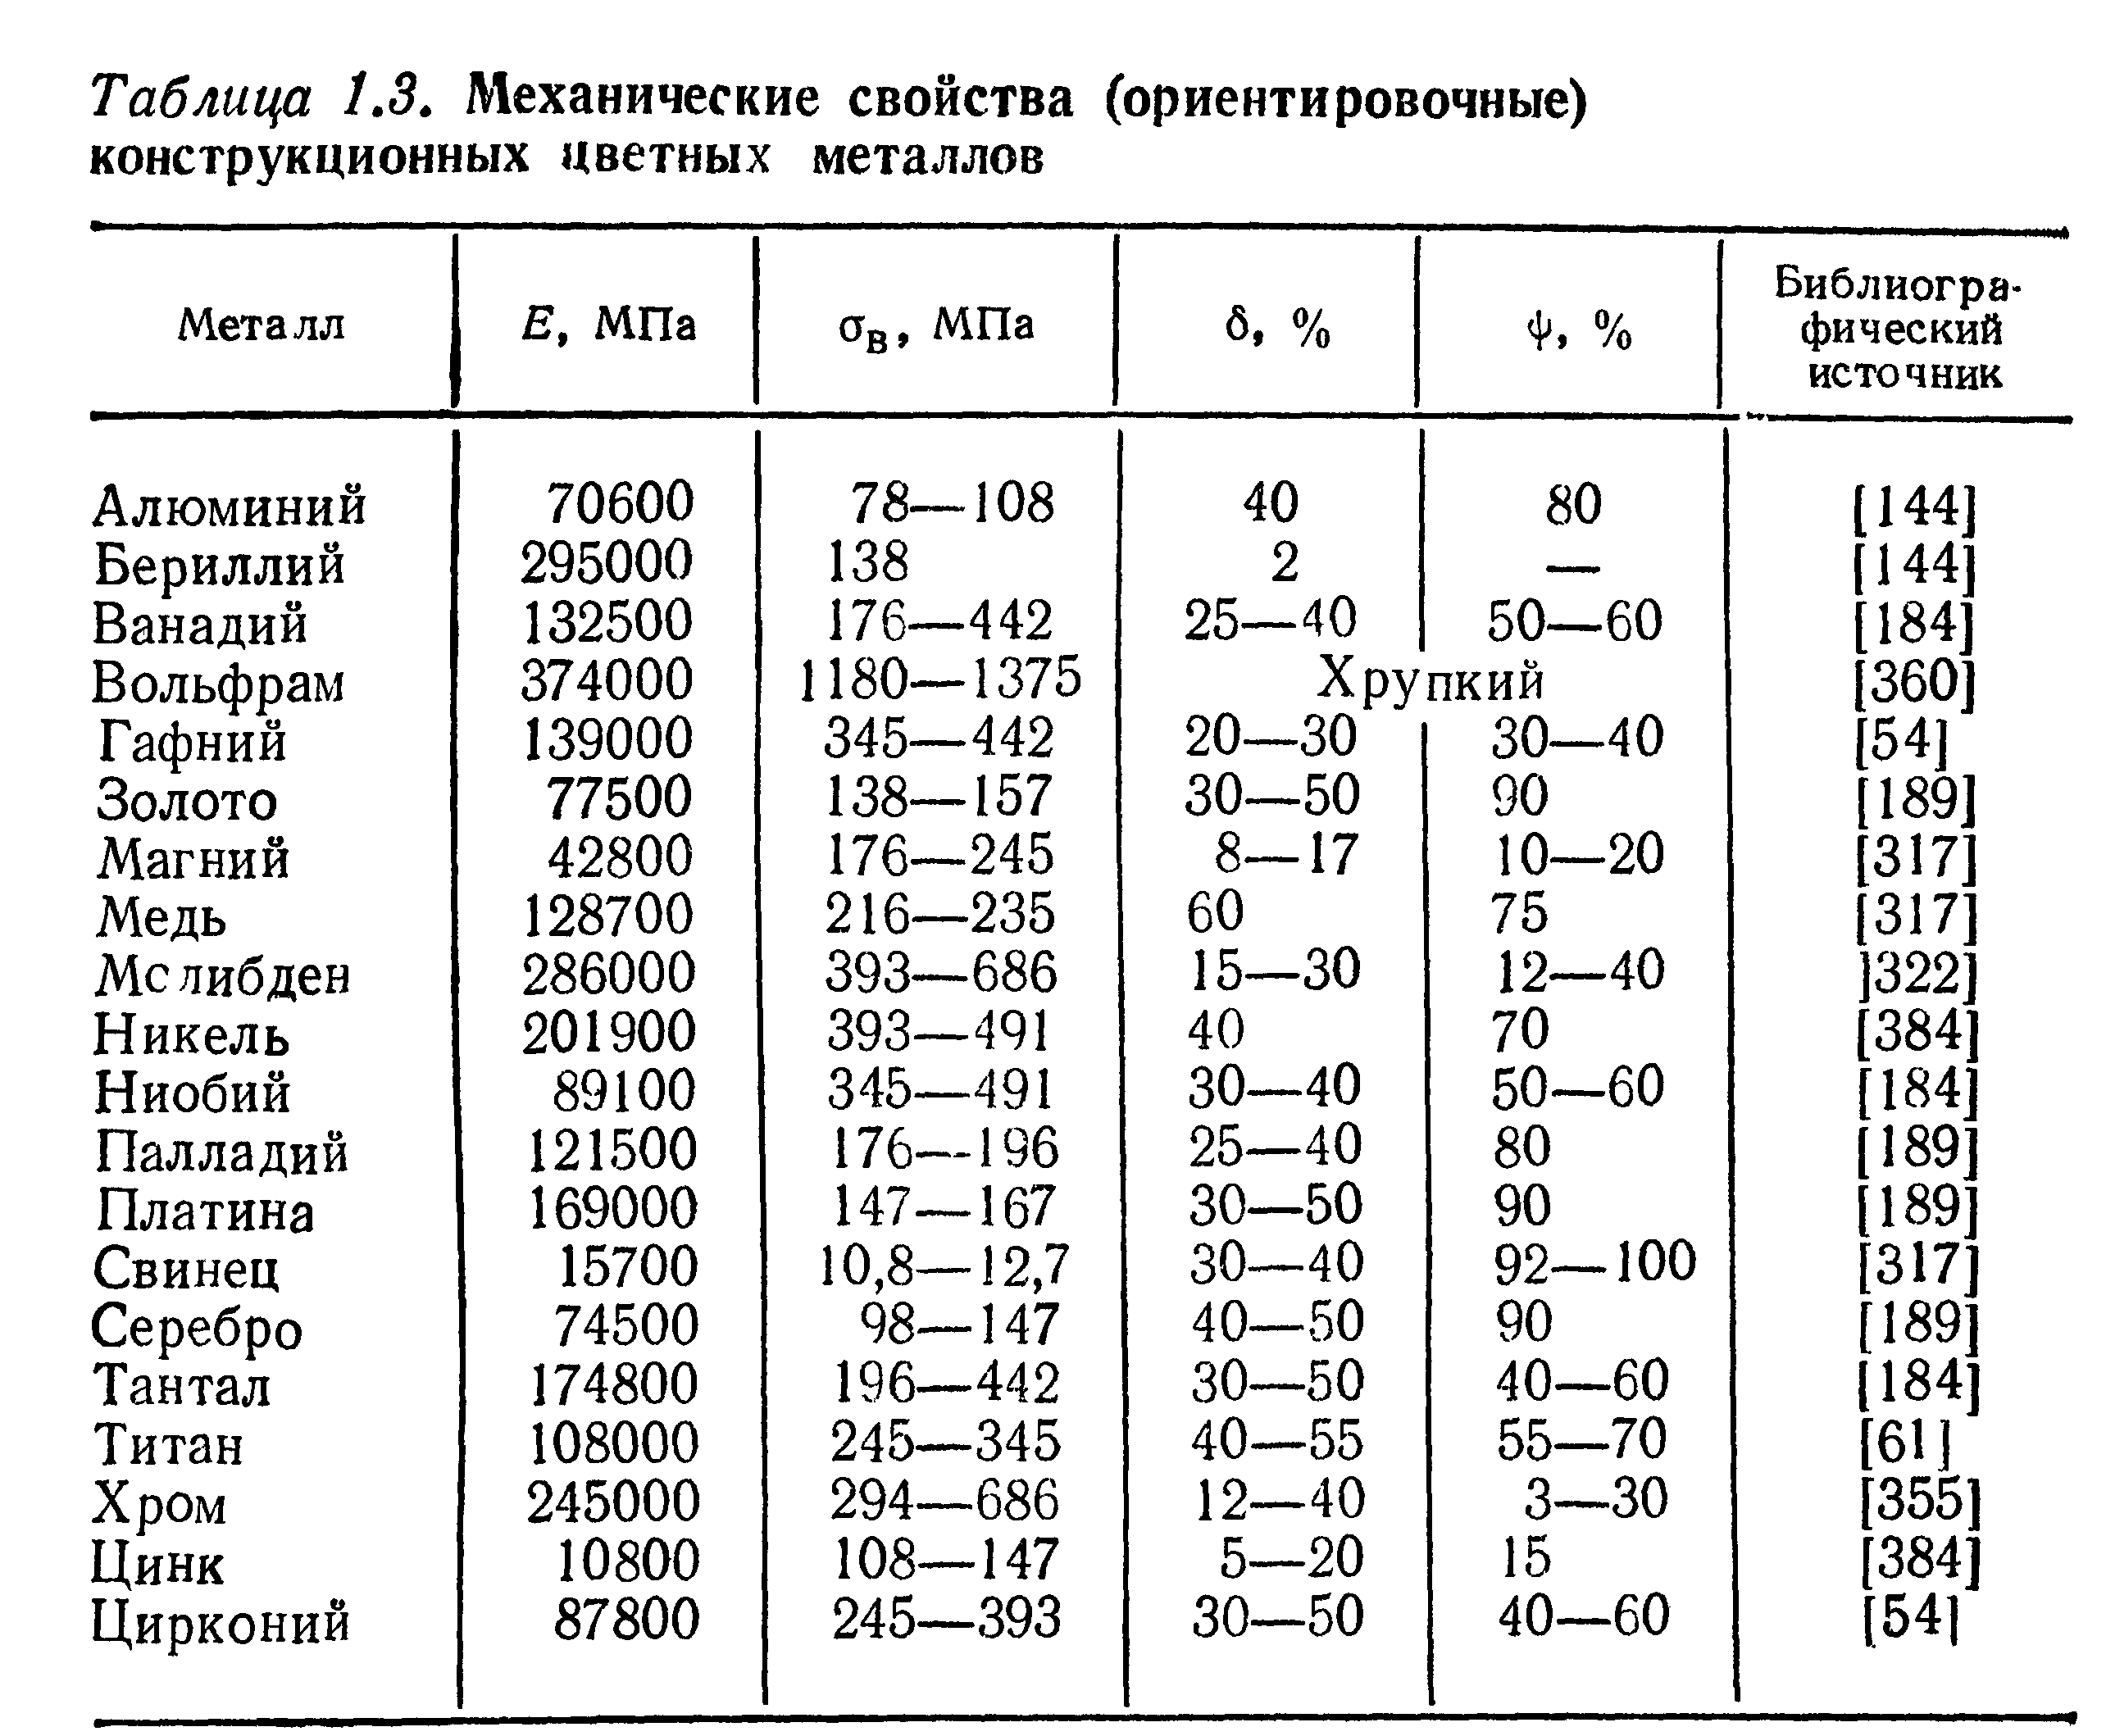 Таблица механических свойств